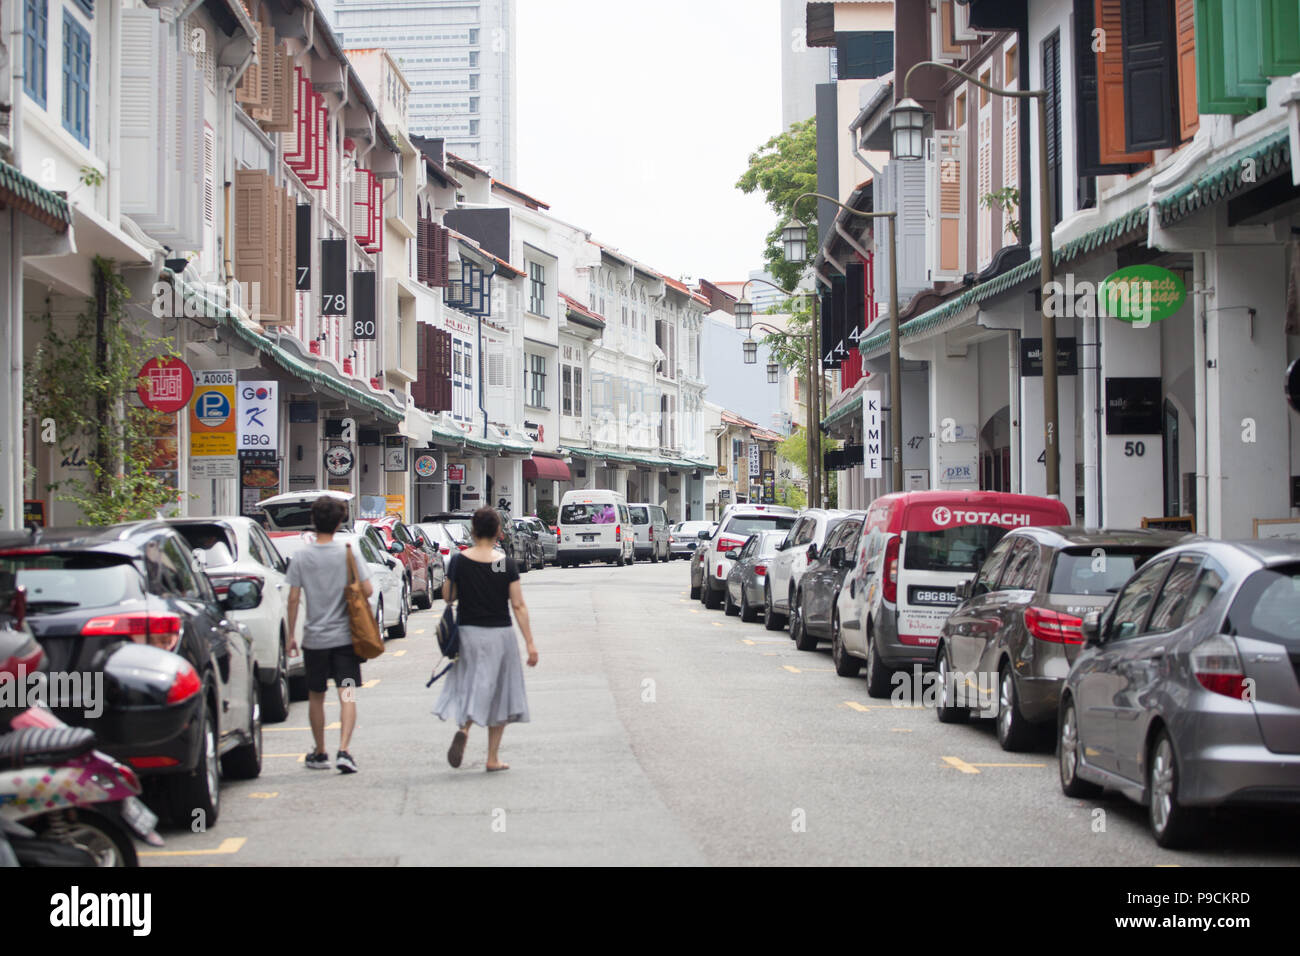 Deux touristes marchant sur la route avec des magasins conservés de chaque côté. Singapour. Banque D'Images